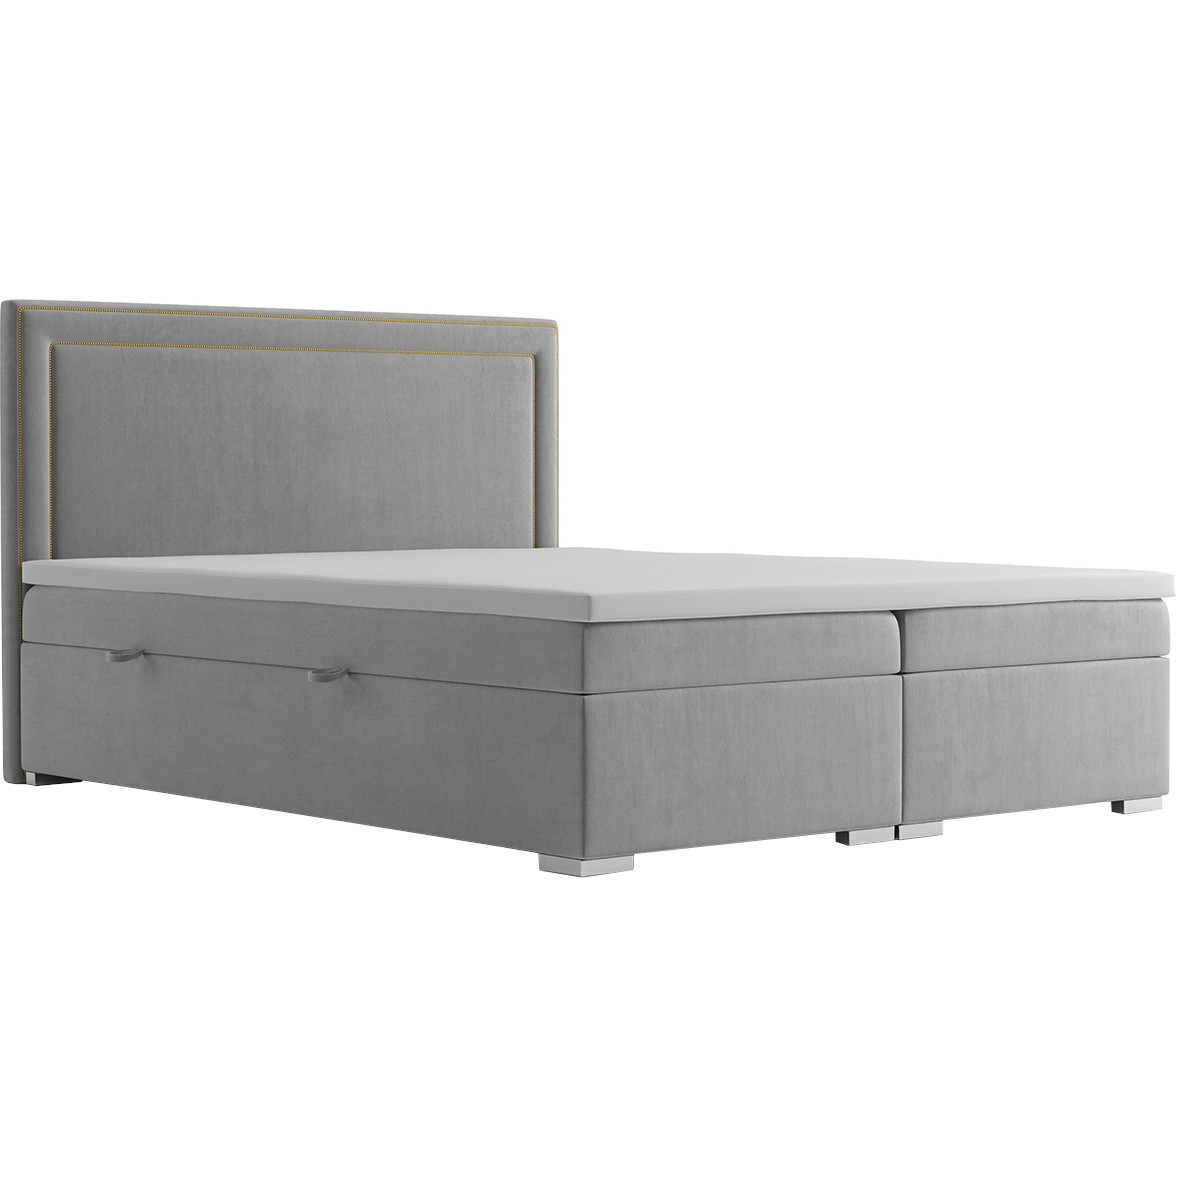 Upholstered bed ANNABEL 160x200 magic velvet 2217